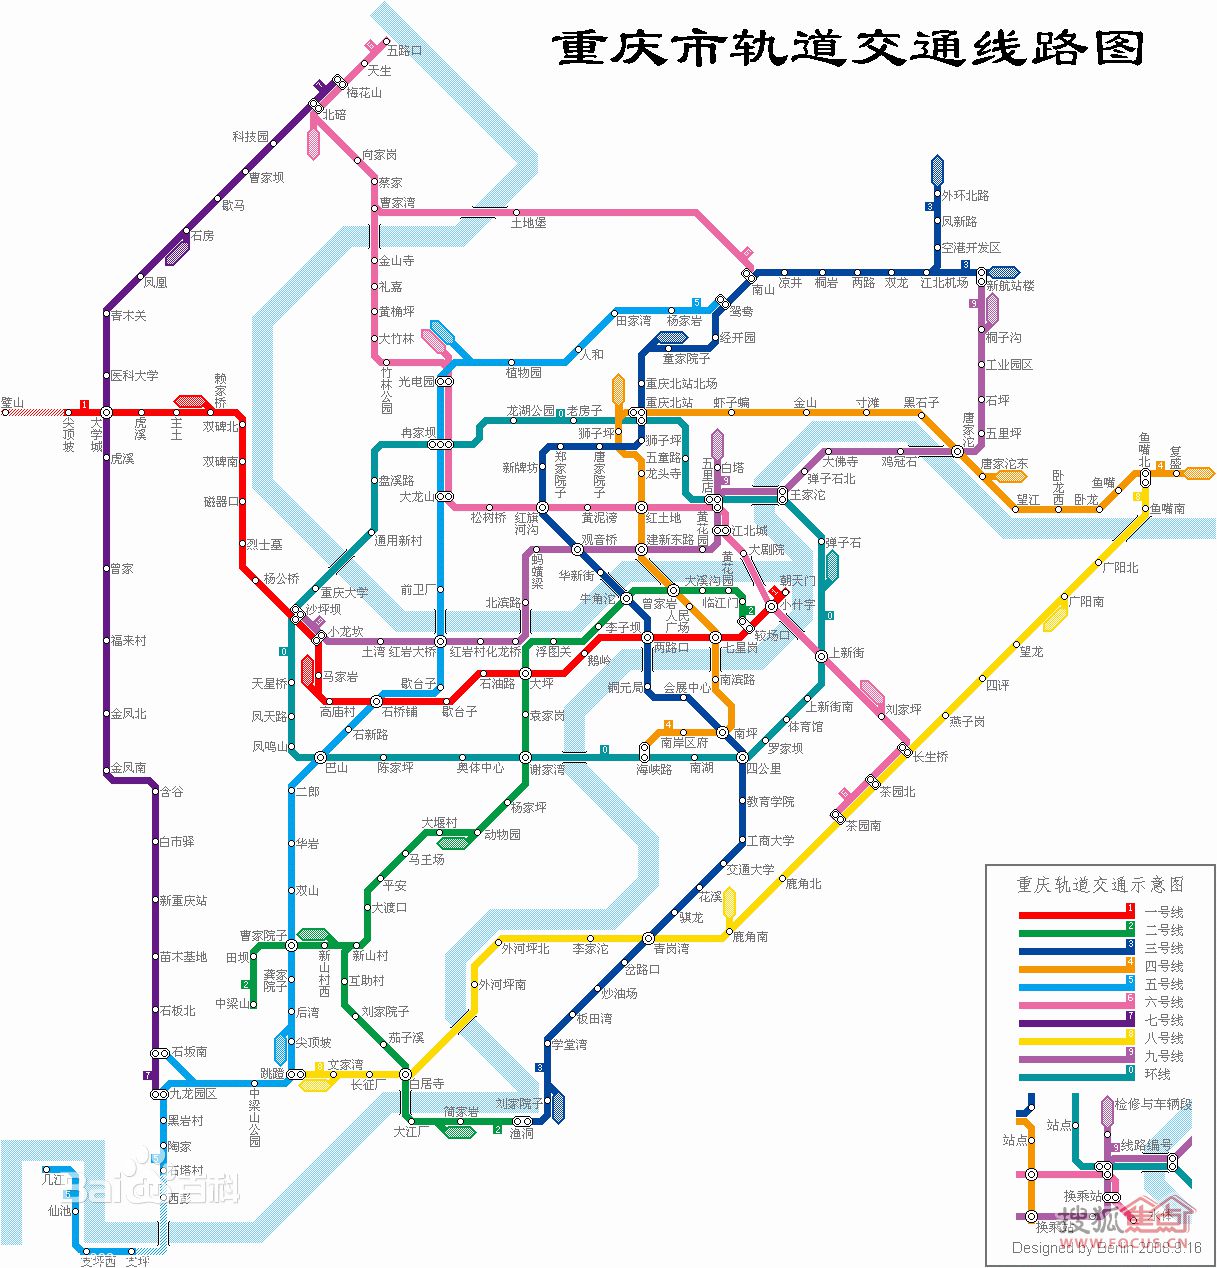 轨道交通简介,重庆轨道交通的介绍